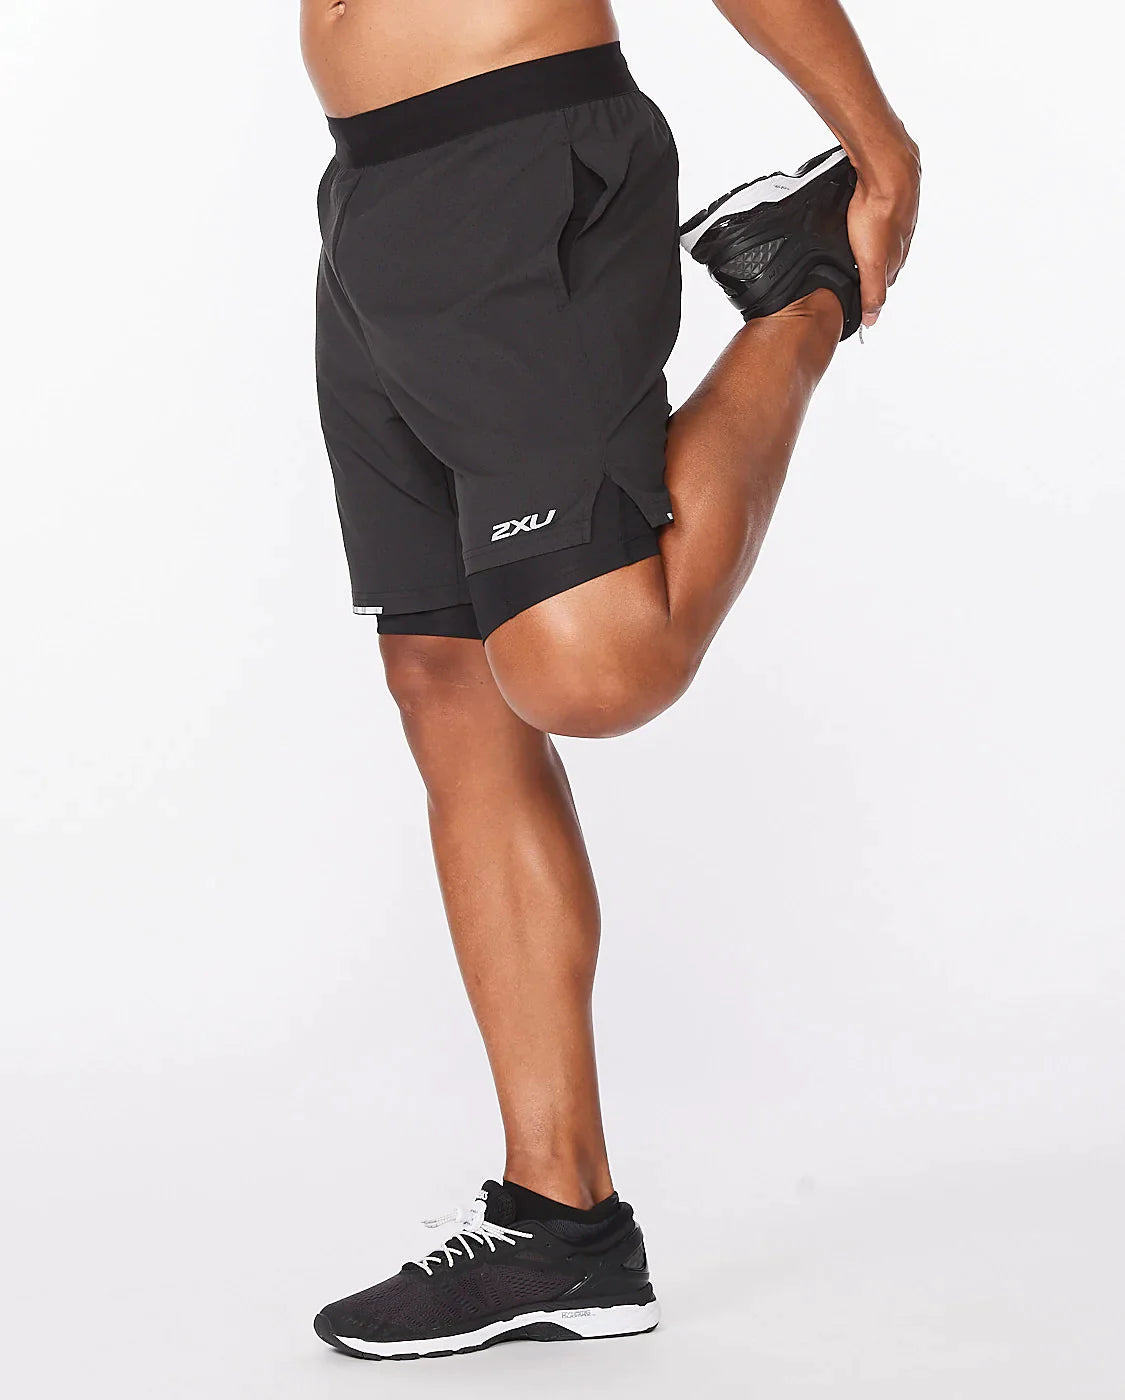 Shorts de Running con calza interior Hombre Aero 7 pulgadas - Negro reflectante - 2XU